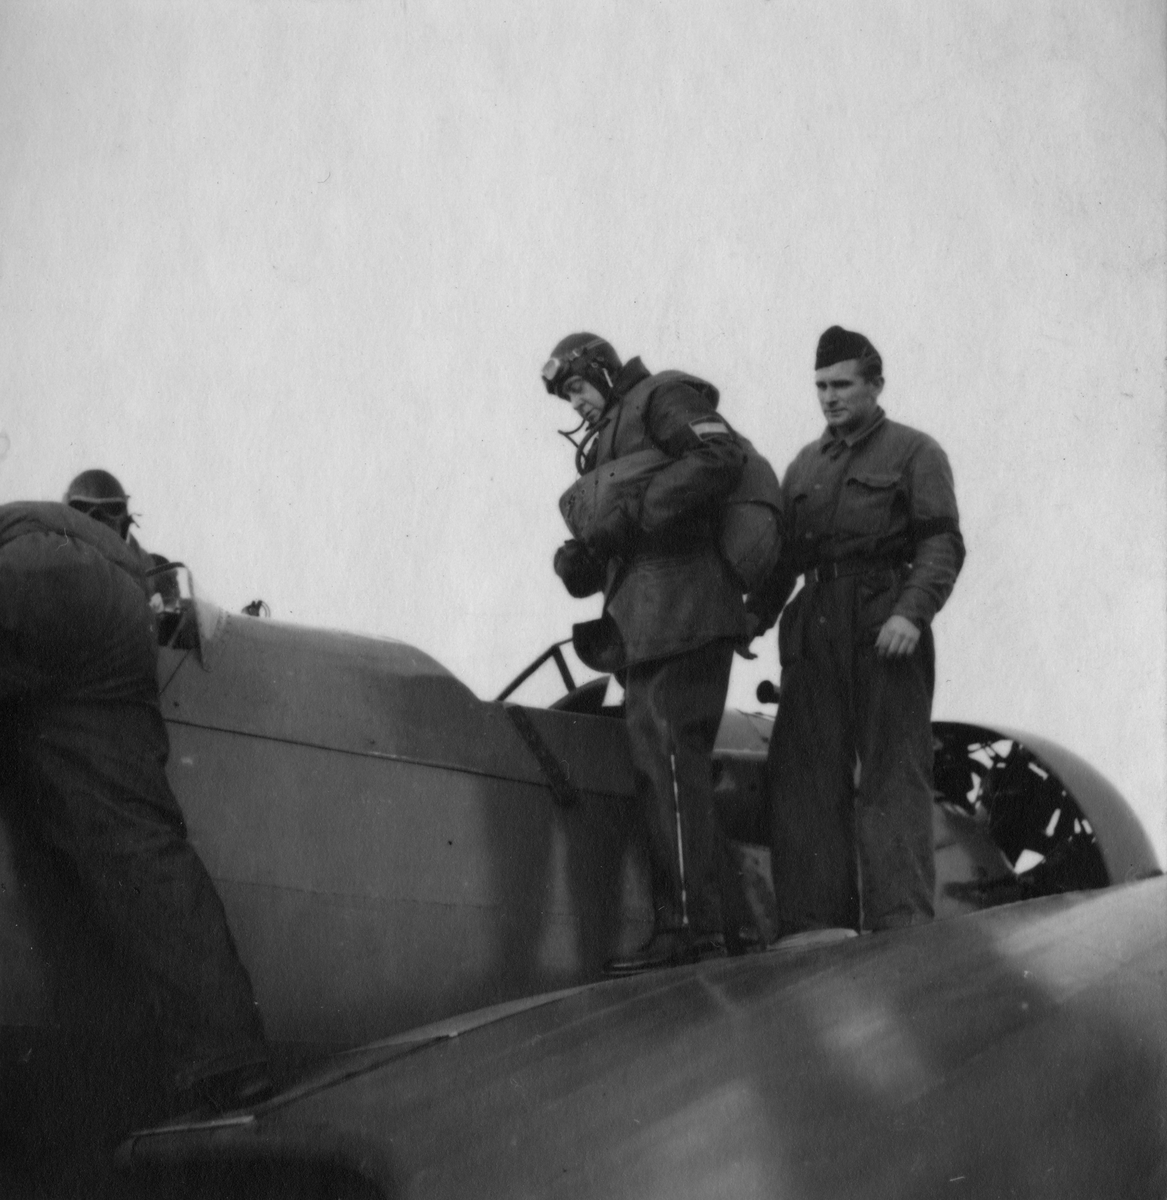 Flygvapenchefen Torsten Friis inspekterar marinspaningskursen på Fårösund, 1937. Flygare på väg upp i flygplan.